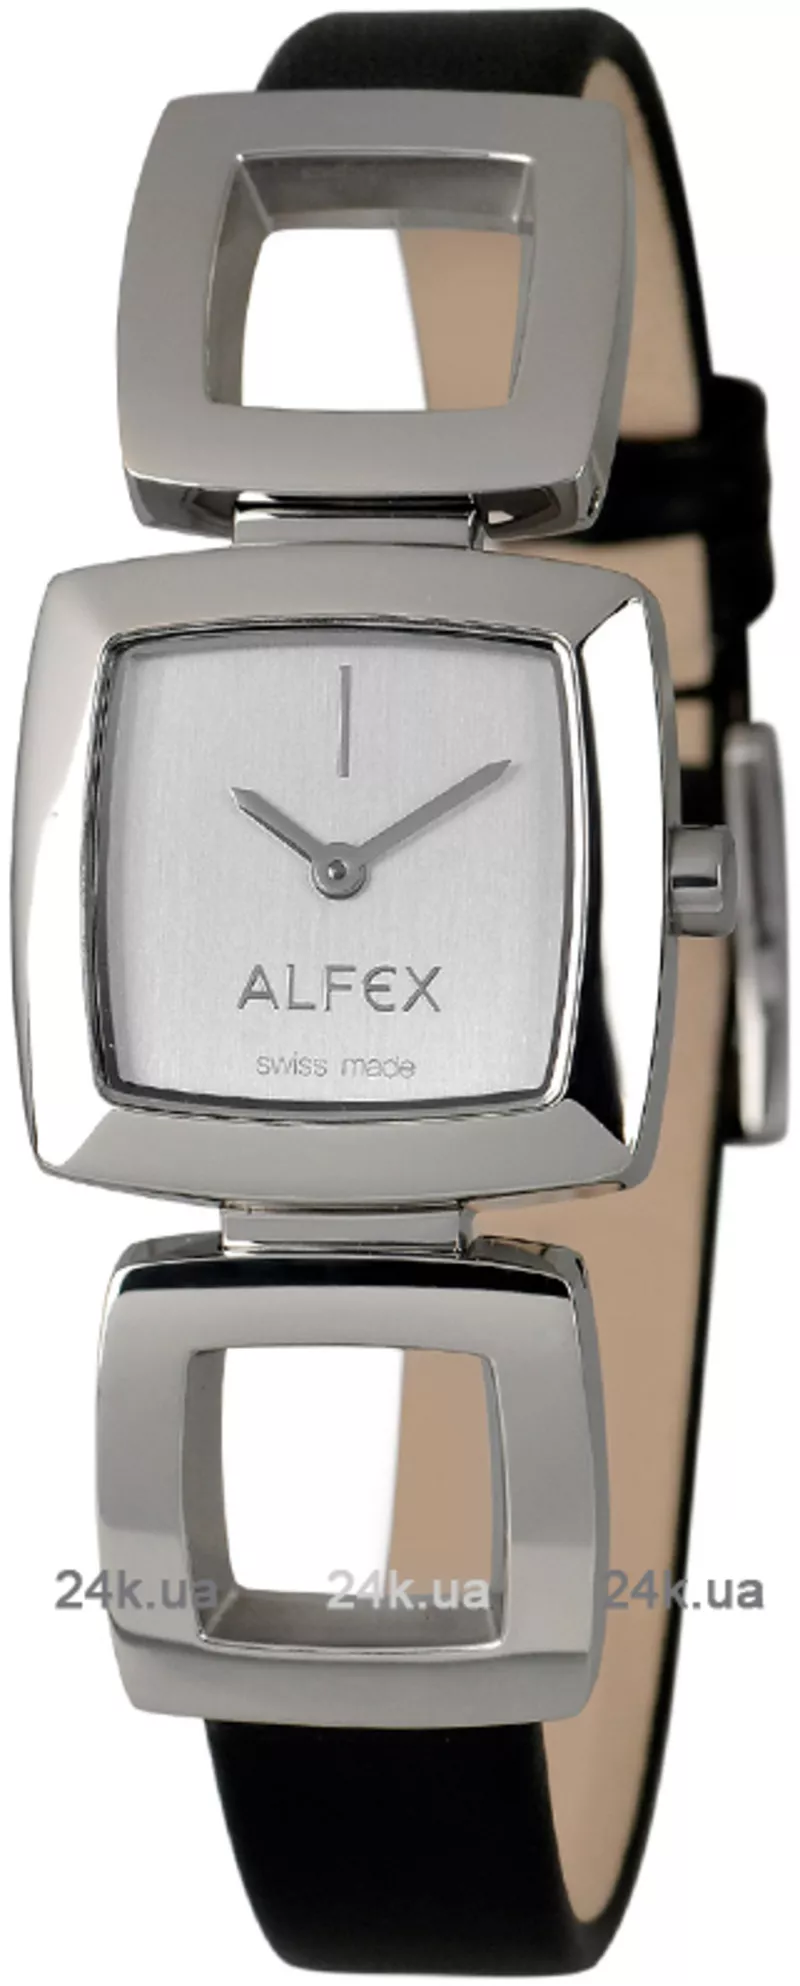 Часы Alfex 5725/005